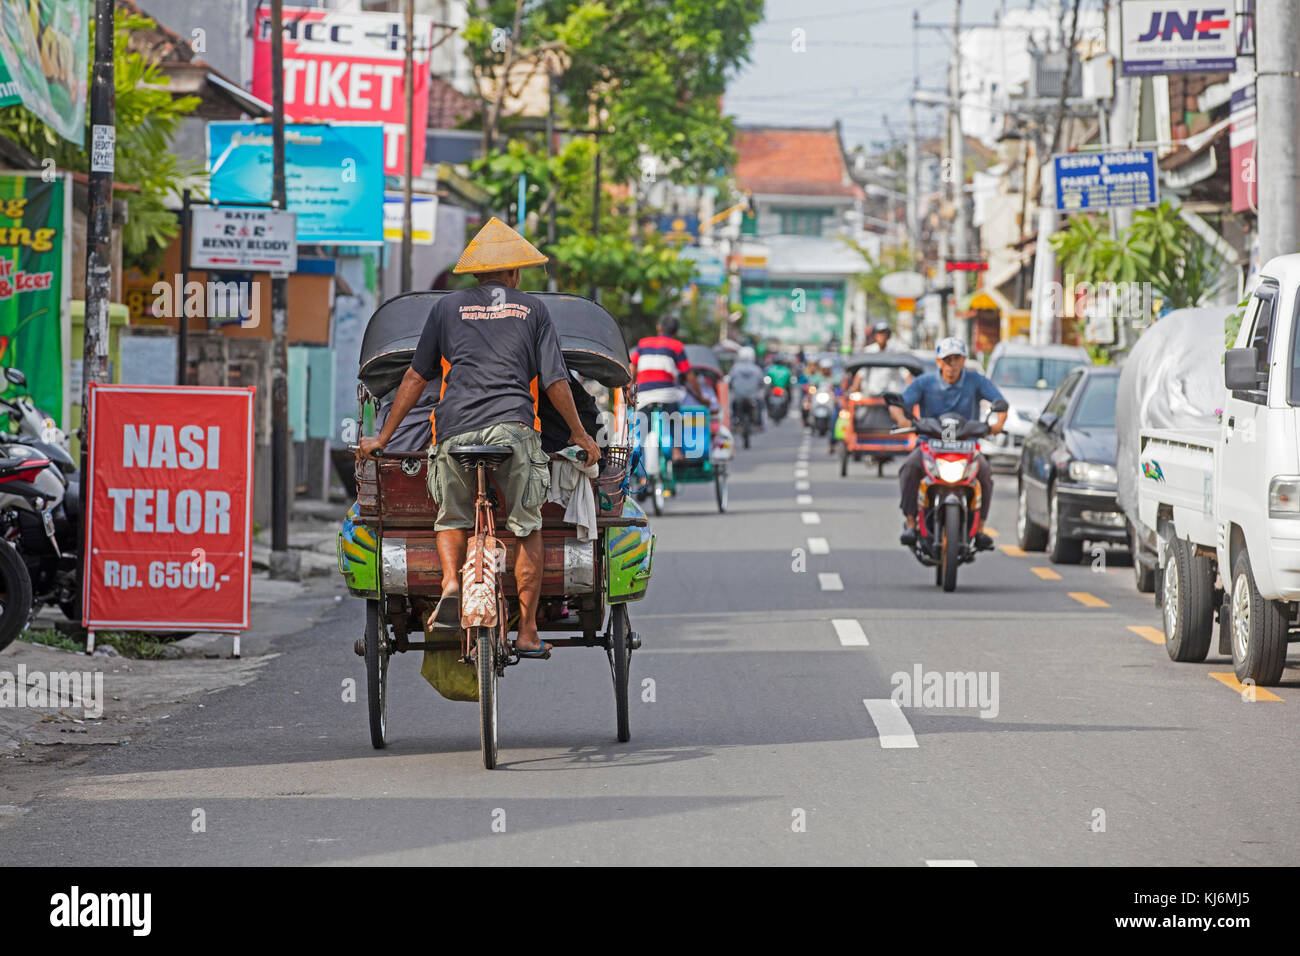 Vélos-pousse / becak pour le transport public dans la ville de Yogyakarta, java, Indonésie Banque D'Images